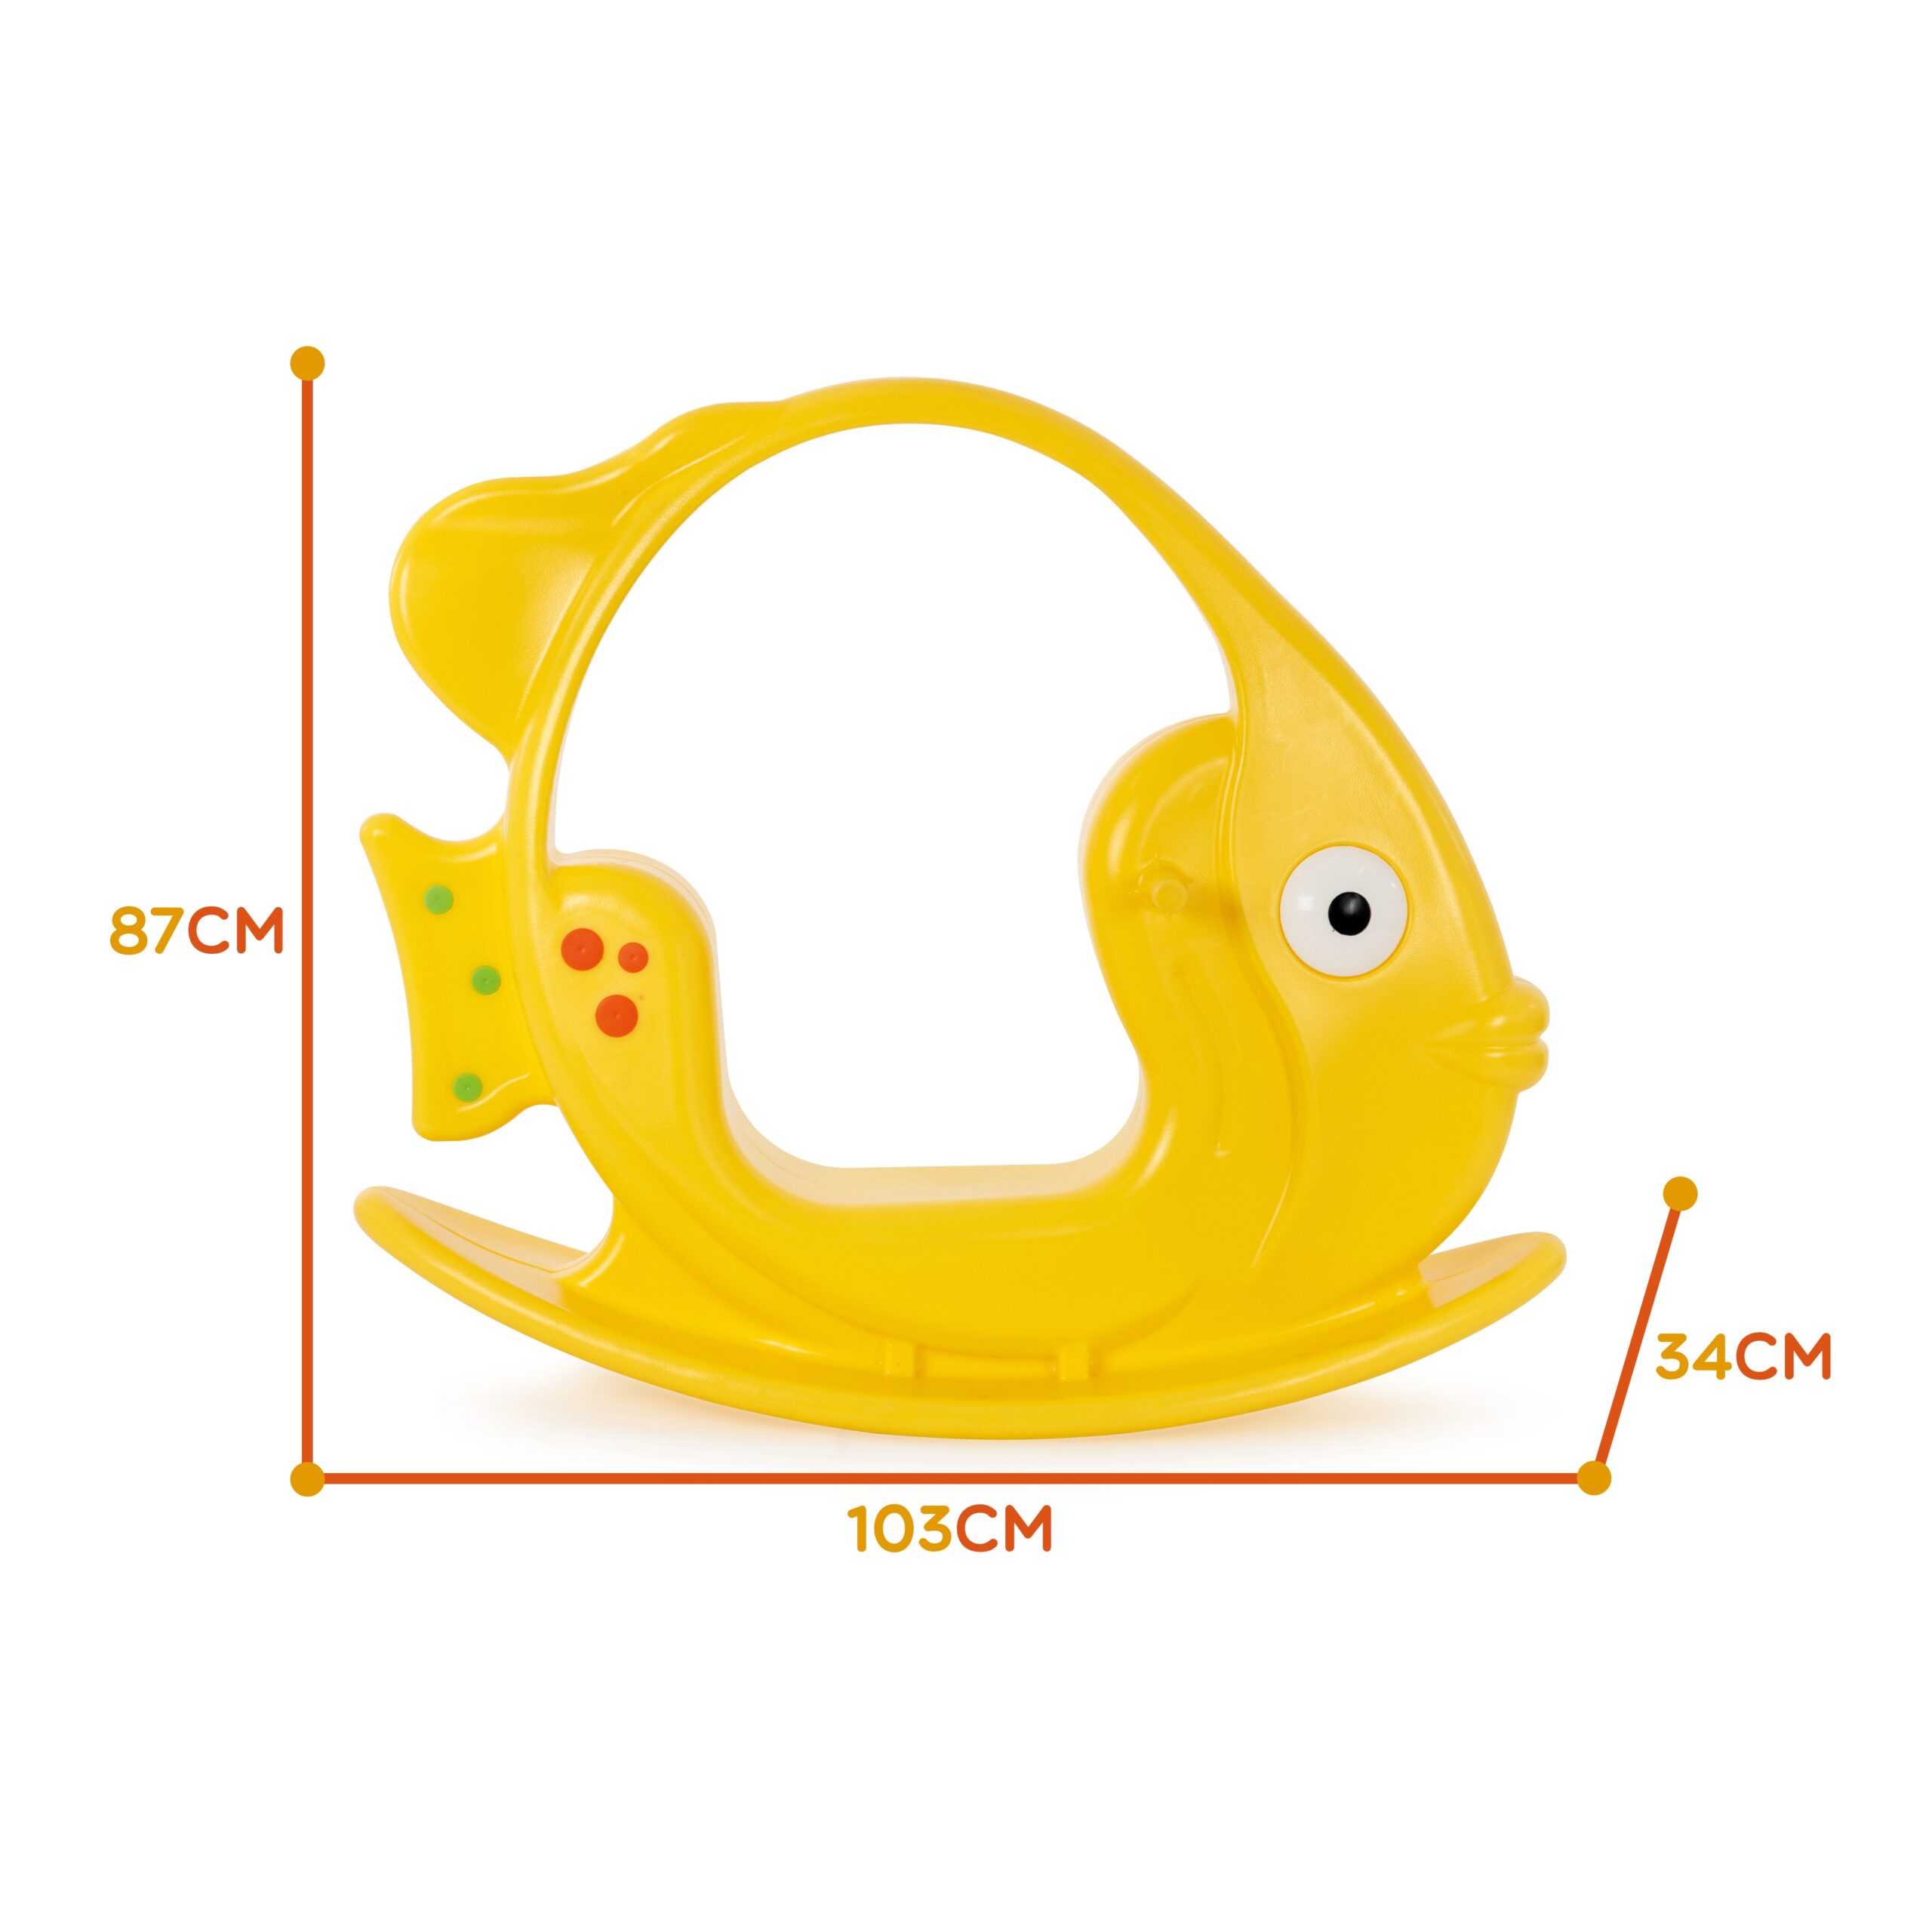 Bujak rybka - żółty, do 35 kg, zabawka dla dzieci, Woopie